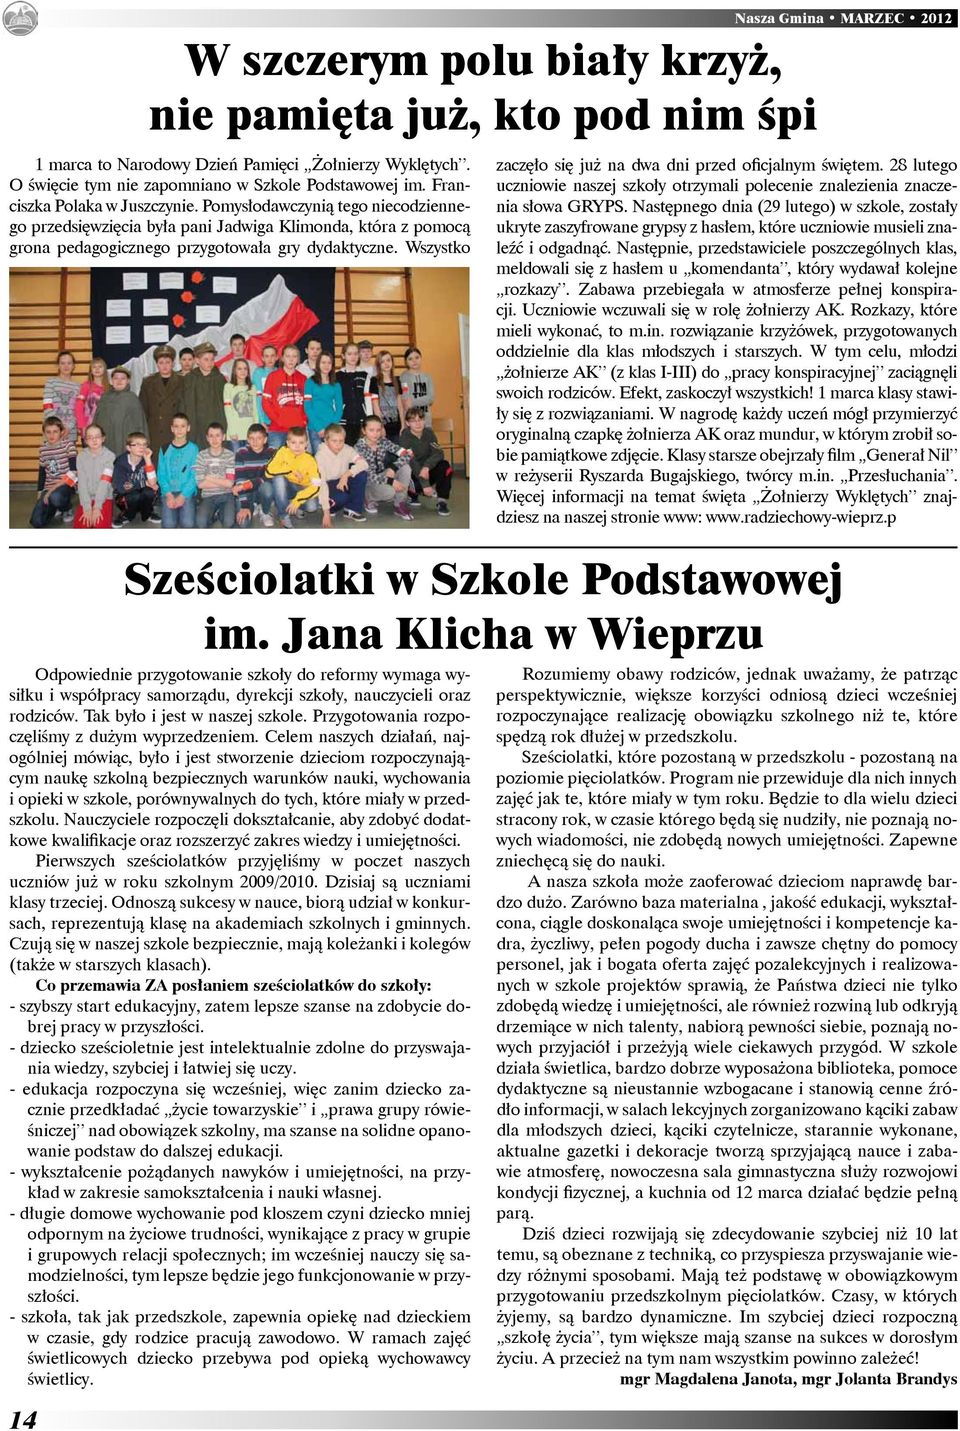 Wszystko Sześciolatki w Szkole Podstawowej im. Jana Klicha w Wieprzu Odpowiednie przygotowanie szkoły do reformy wymaga wysiłku i współpracy samorządu, dyrekcji szkoły, nauczycieli oraz rodziców.